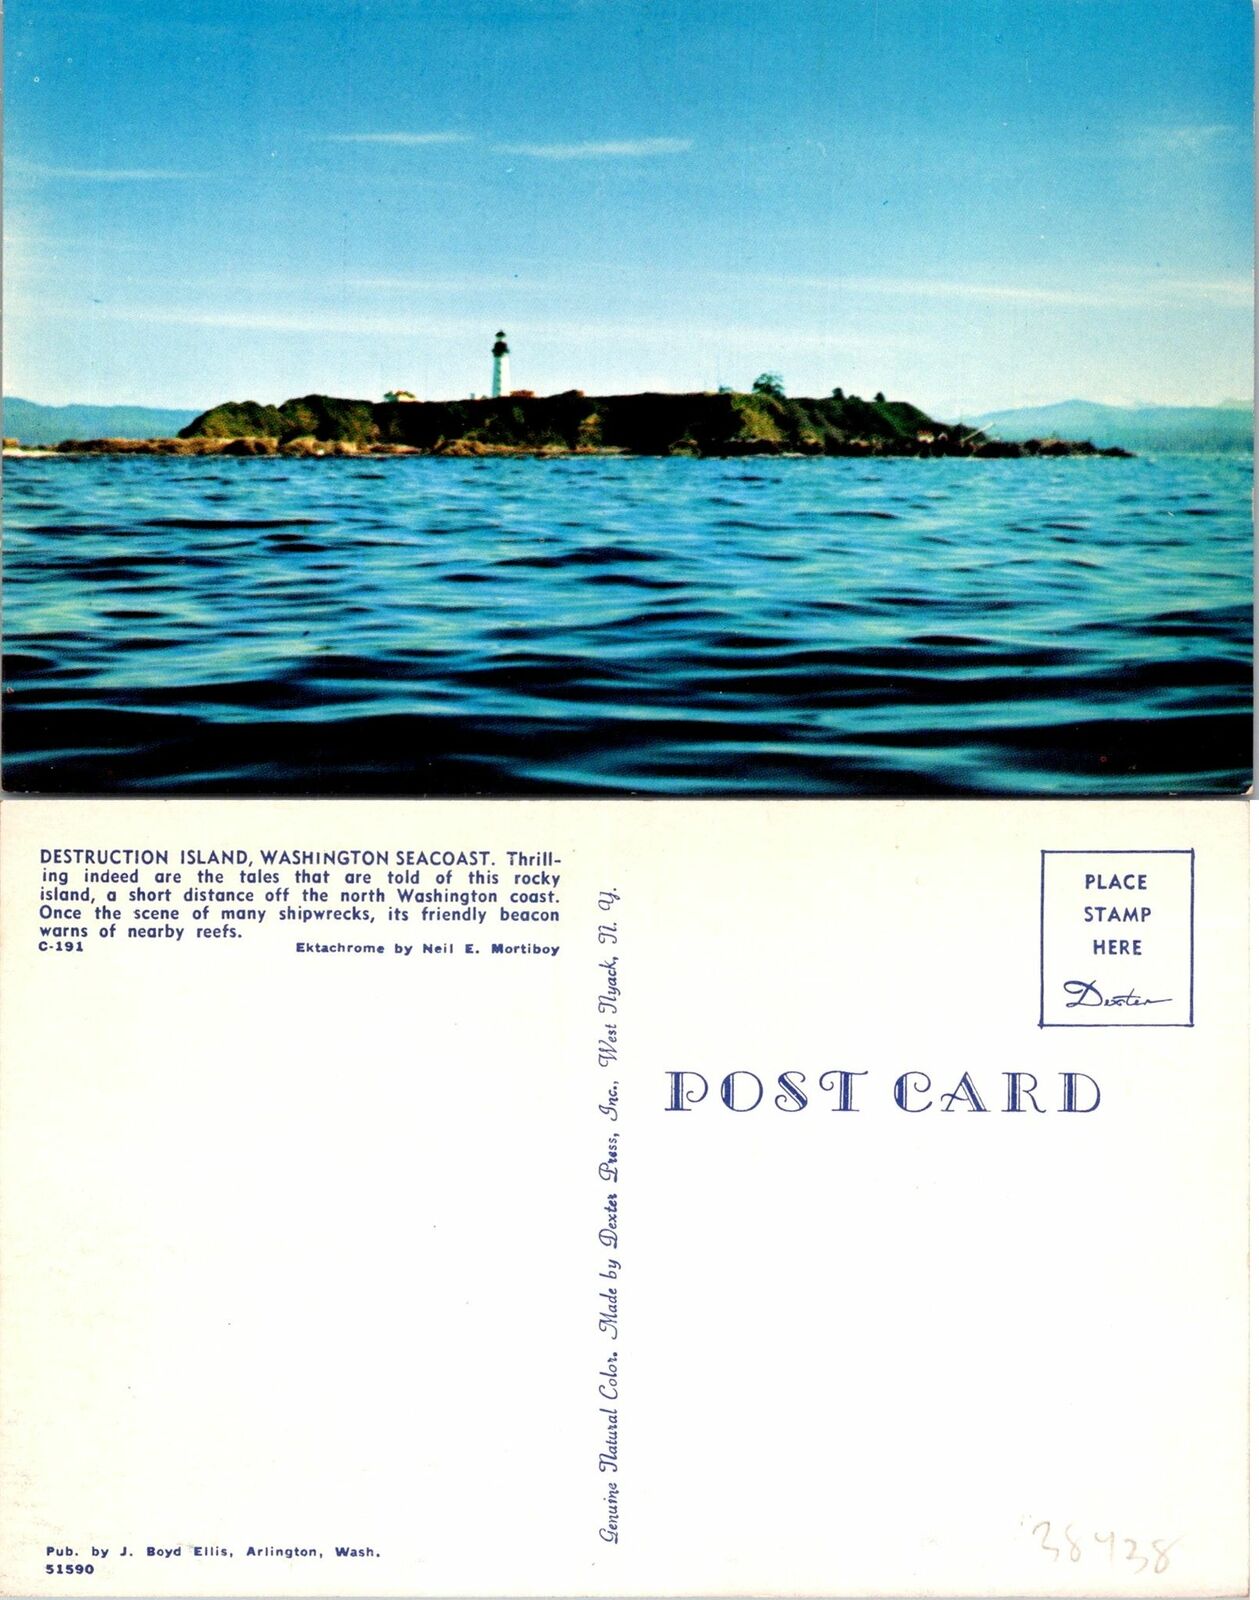 Washington Seacoast Destruction Island Postcard Unused (38438)